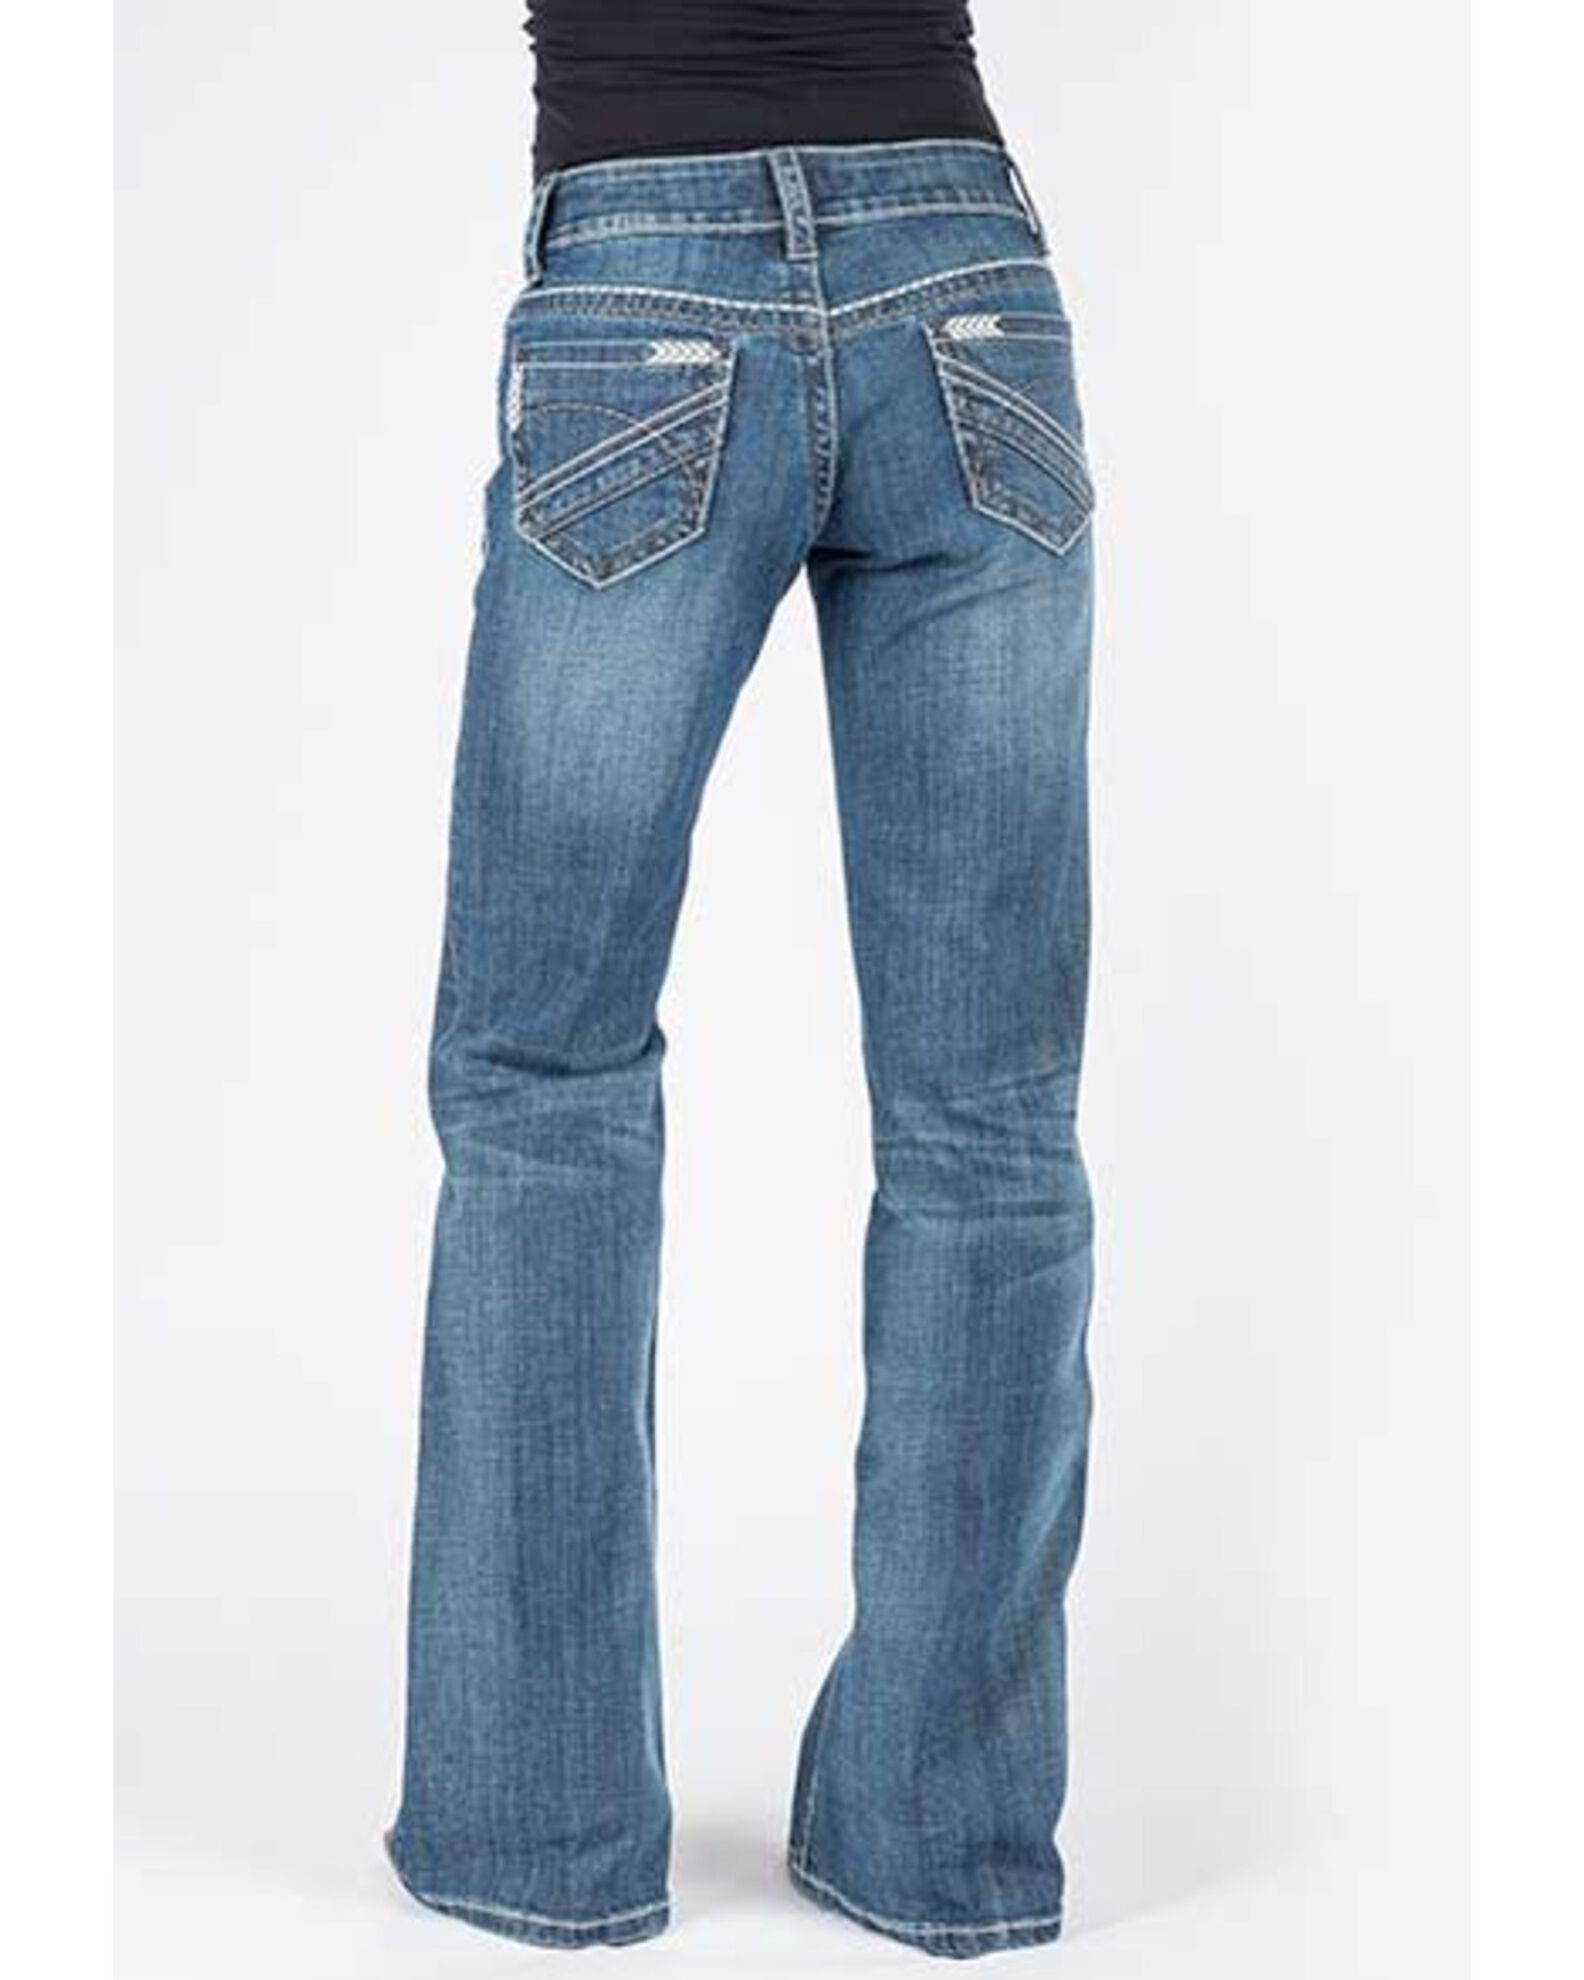 Stetson Women's Medium Southwestern 214 City Trouser Jeans | Boot Barn